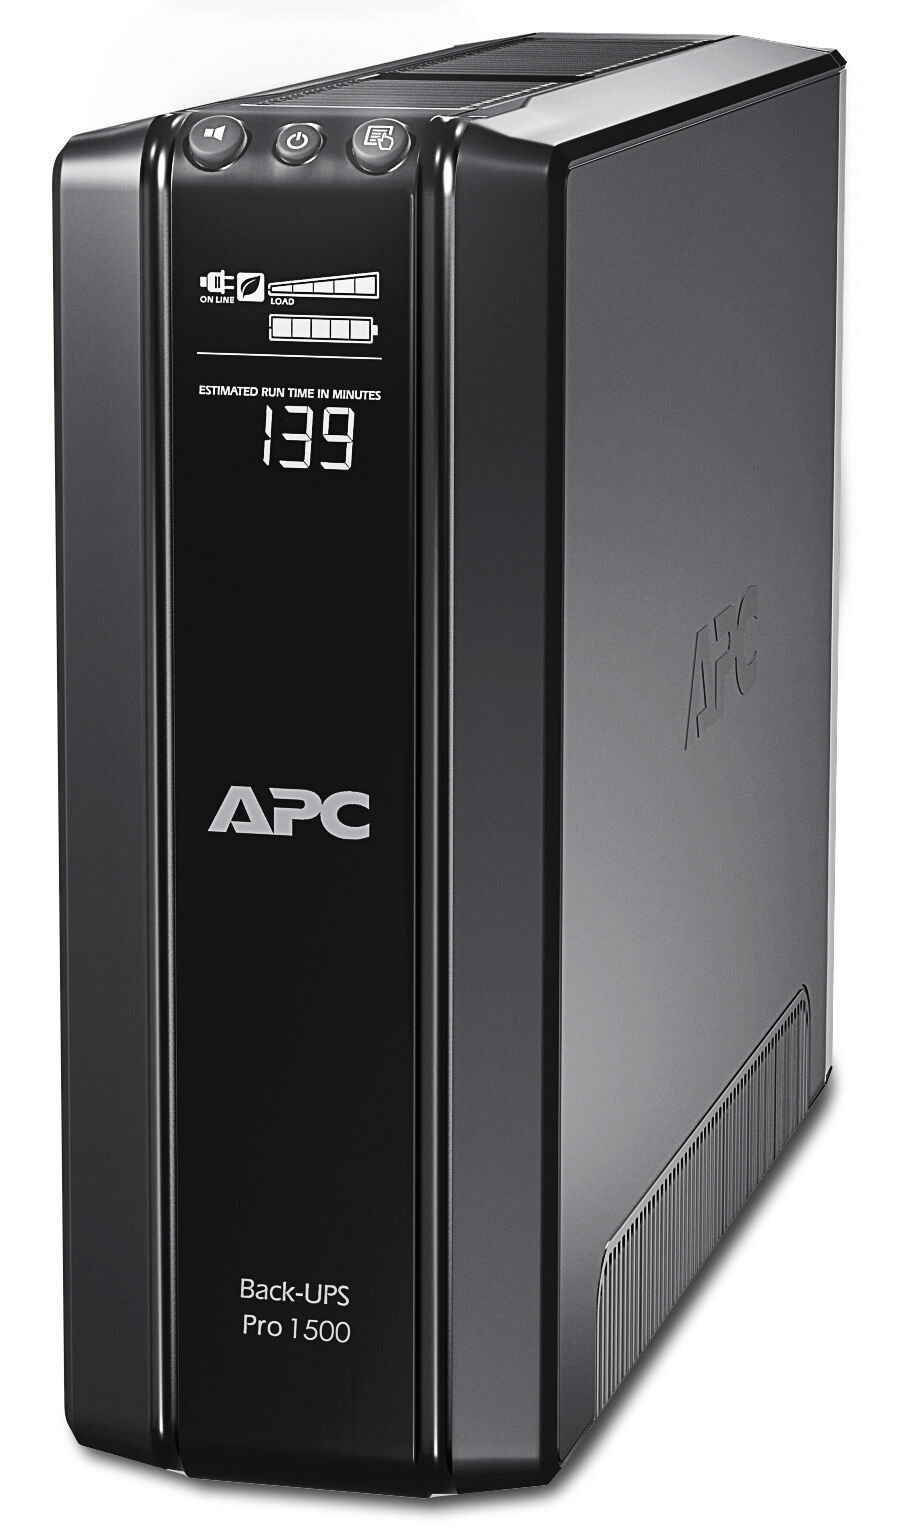 APC Back-UPS Pro gruppo di continuità (UPS) A linea interattiva 1,5 kVA 865 W 10 presa(e) AC [BR1500GI]